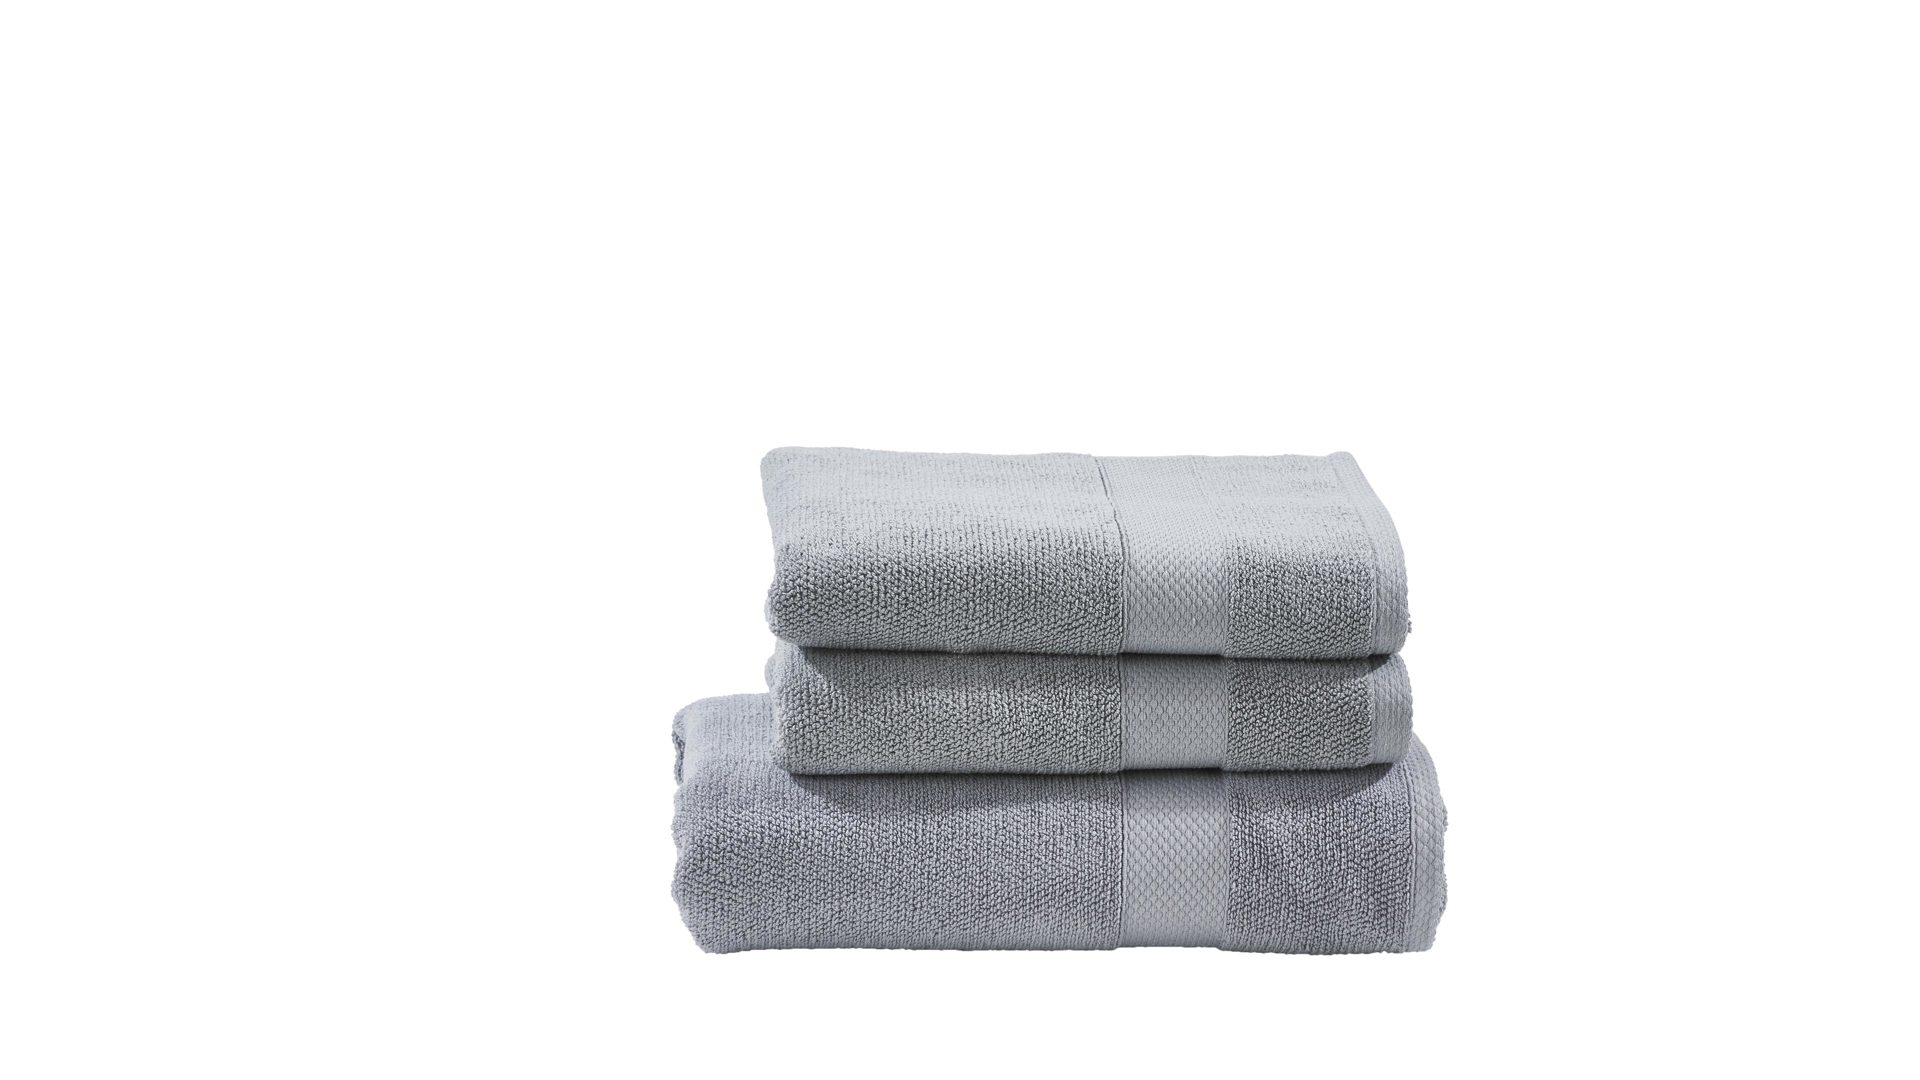 Handtuch-Set Done® by karabel home company aus Stoff in Grau DONE® Handtuch-Set Deluxe silberfarbene Baumwolle  – dreiteilig